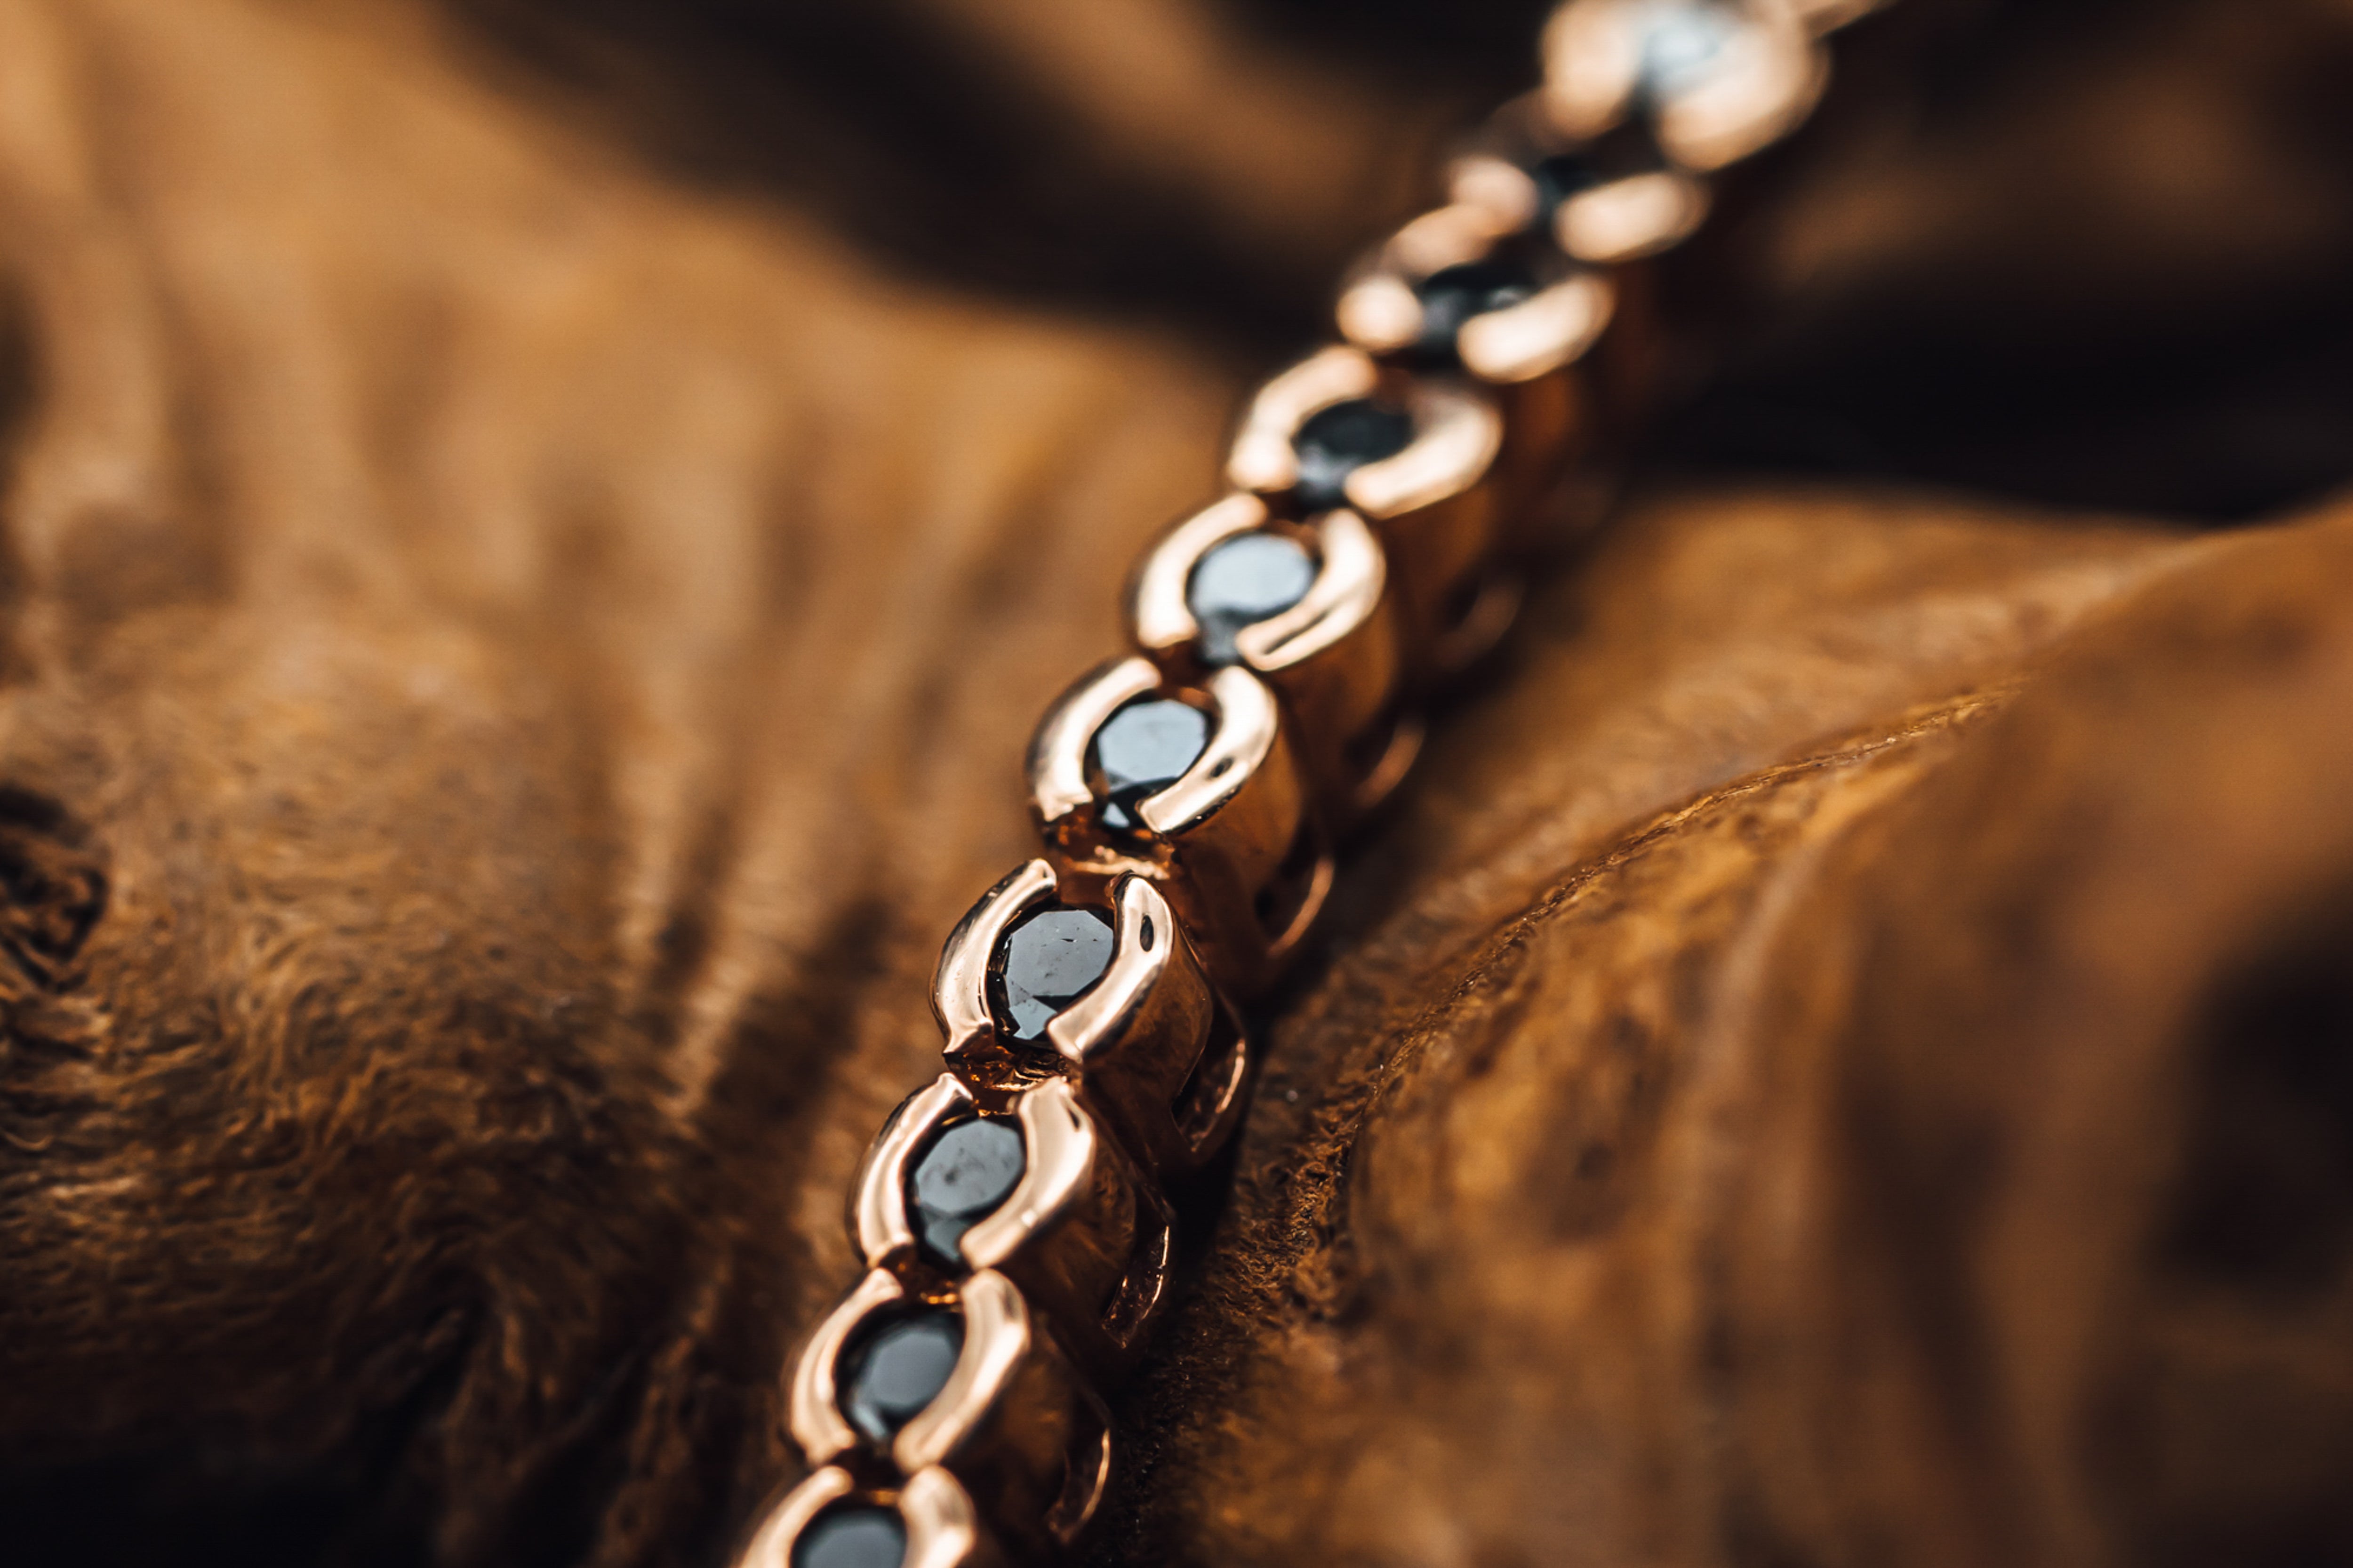 Buy Hanuman Diamond Bracelet in Silver Online in India at Best Price -  Jewelslane